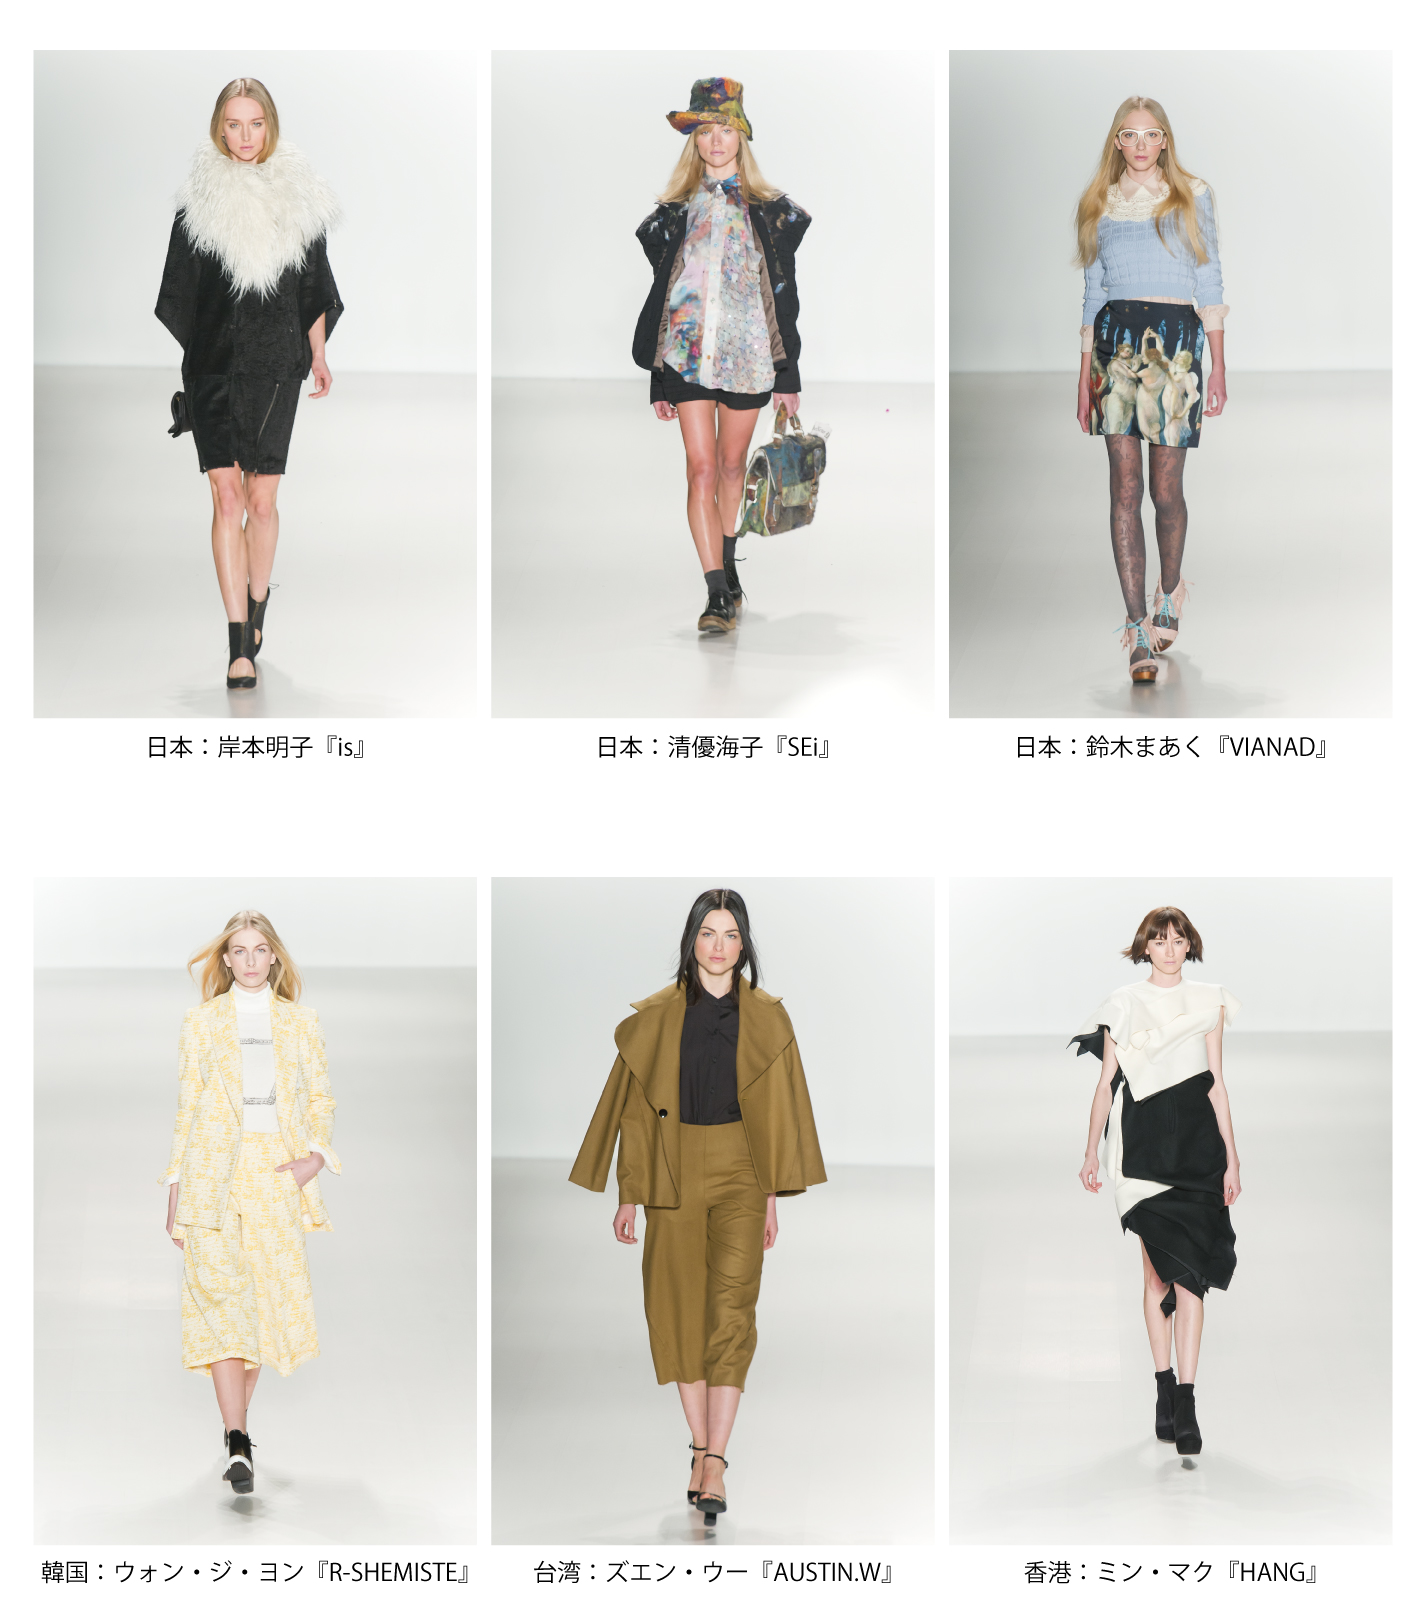 Asia Fashion Collection アジアの若手ファッションデザイナーがニューヨークコレクションでランウェイデビュー ファショコン通信公式ブログ